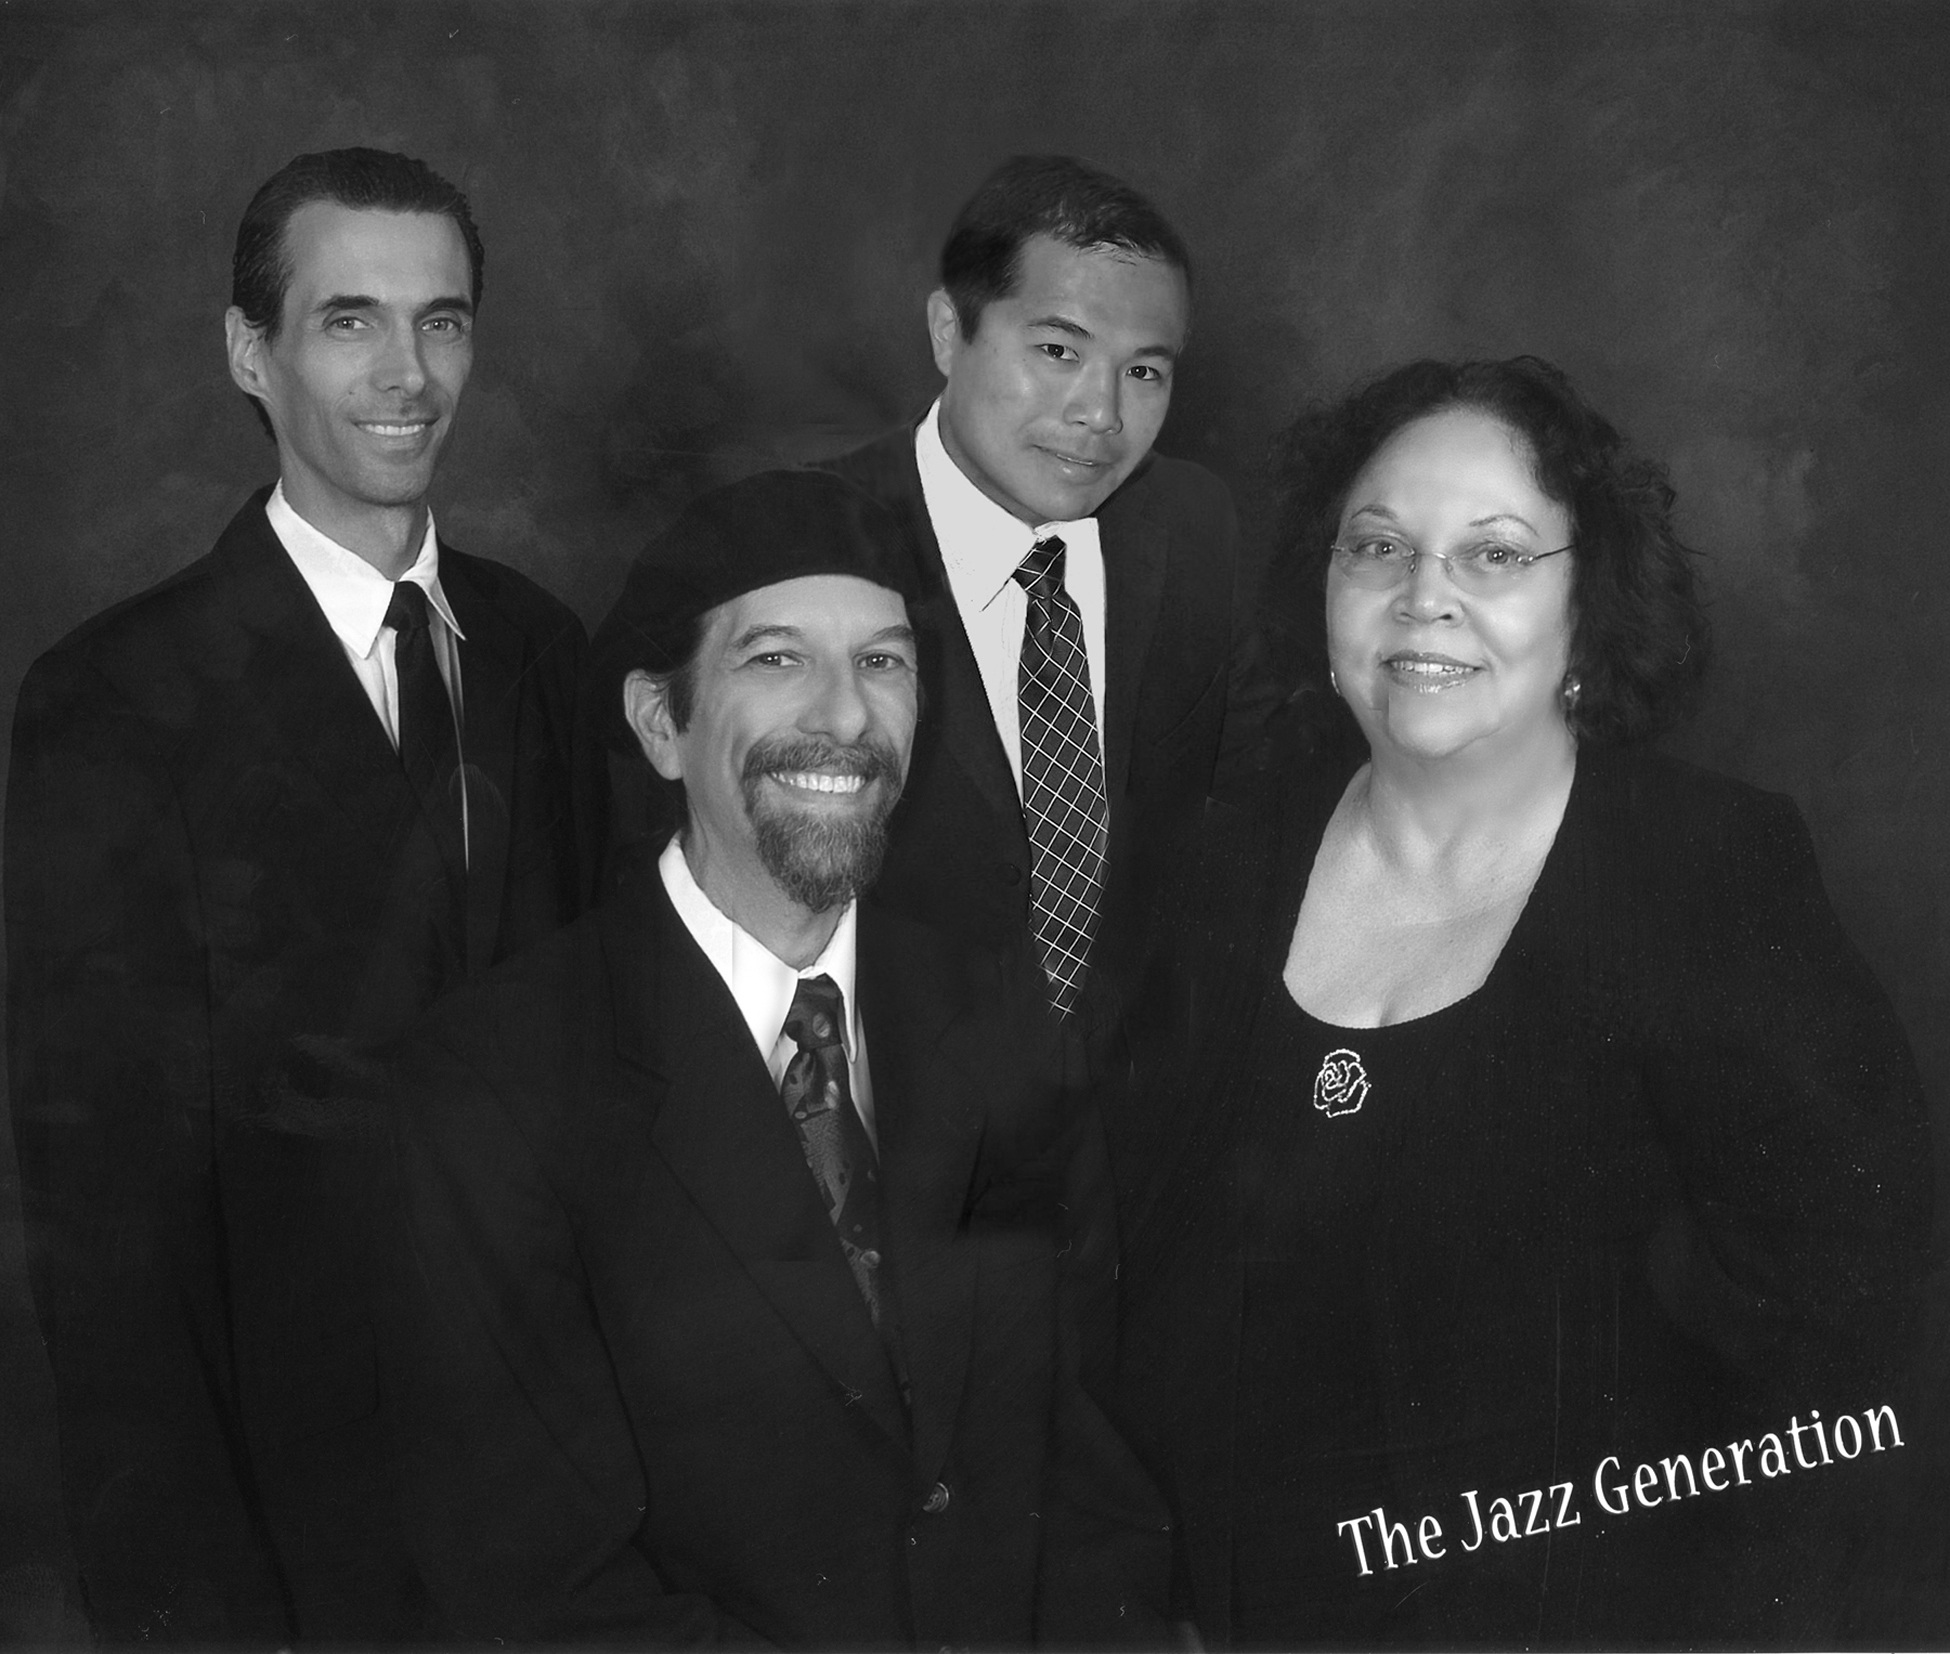 The Jazz Generation band